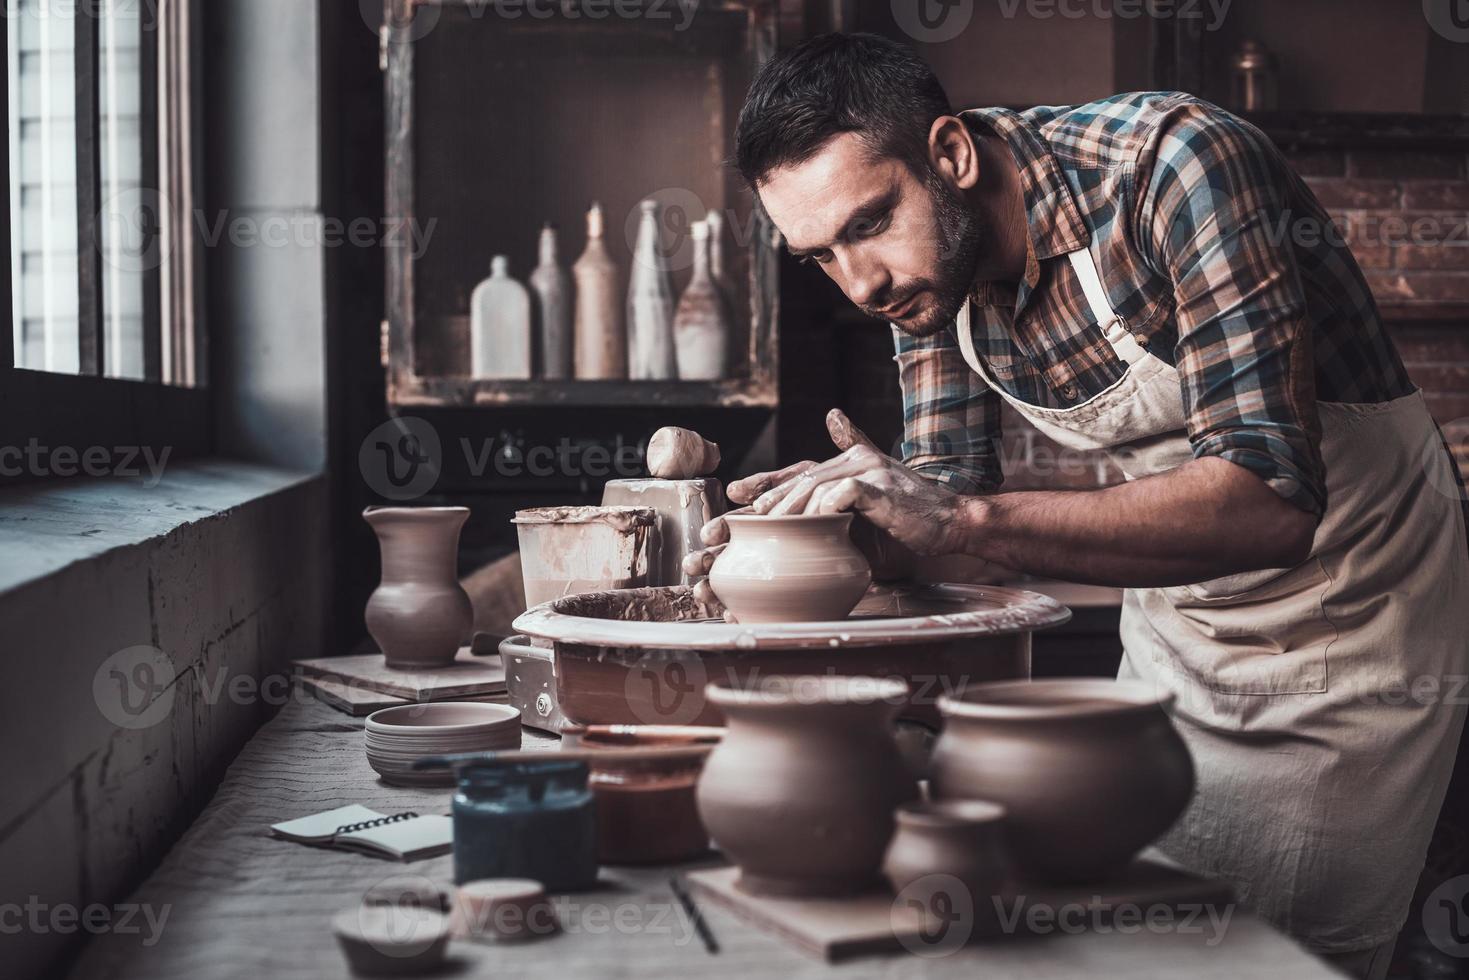 gesamt Konzentration beim arbeiten. zuversichtlich jung Mann Herstellung Keramik Topf auf das Keramik Rad foto